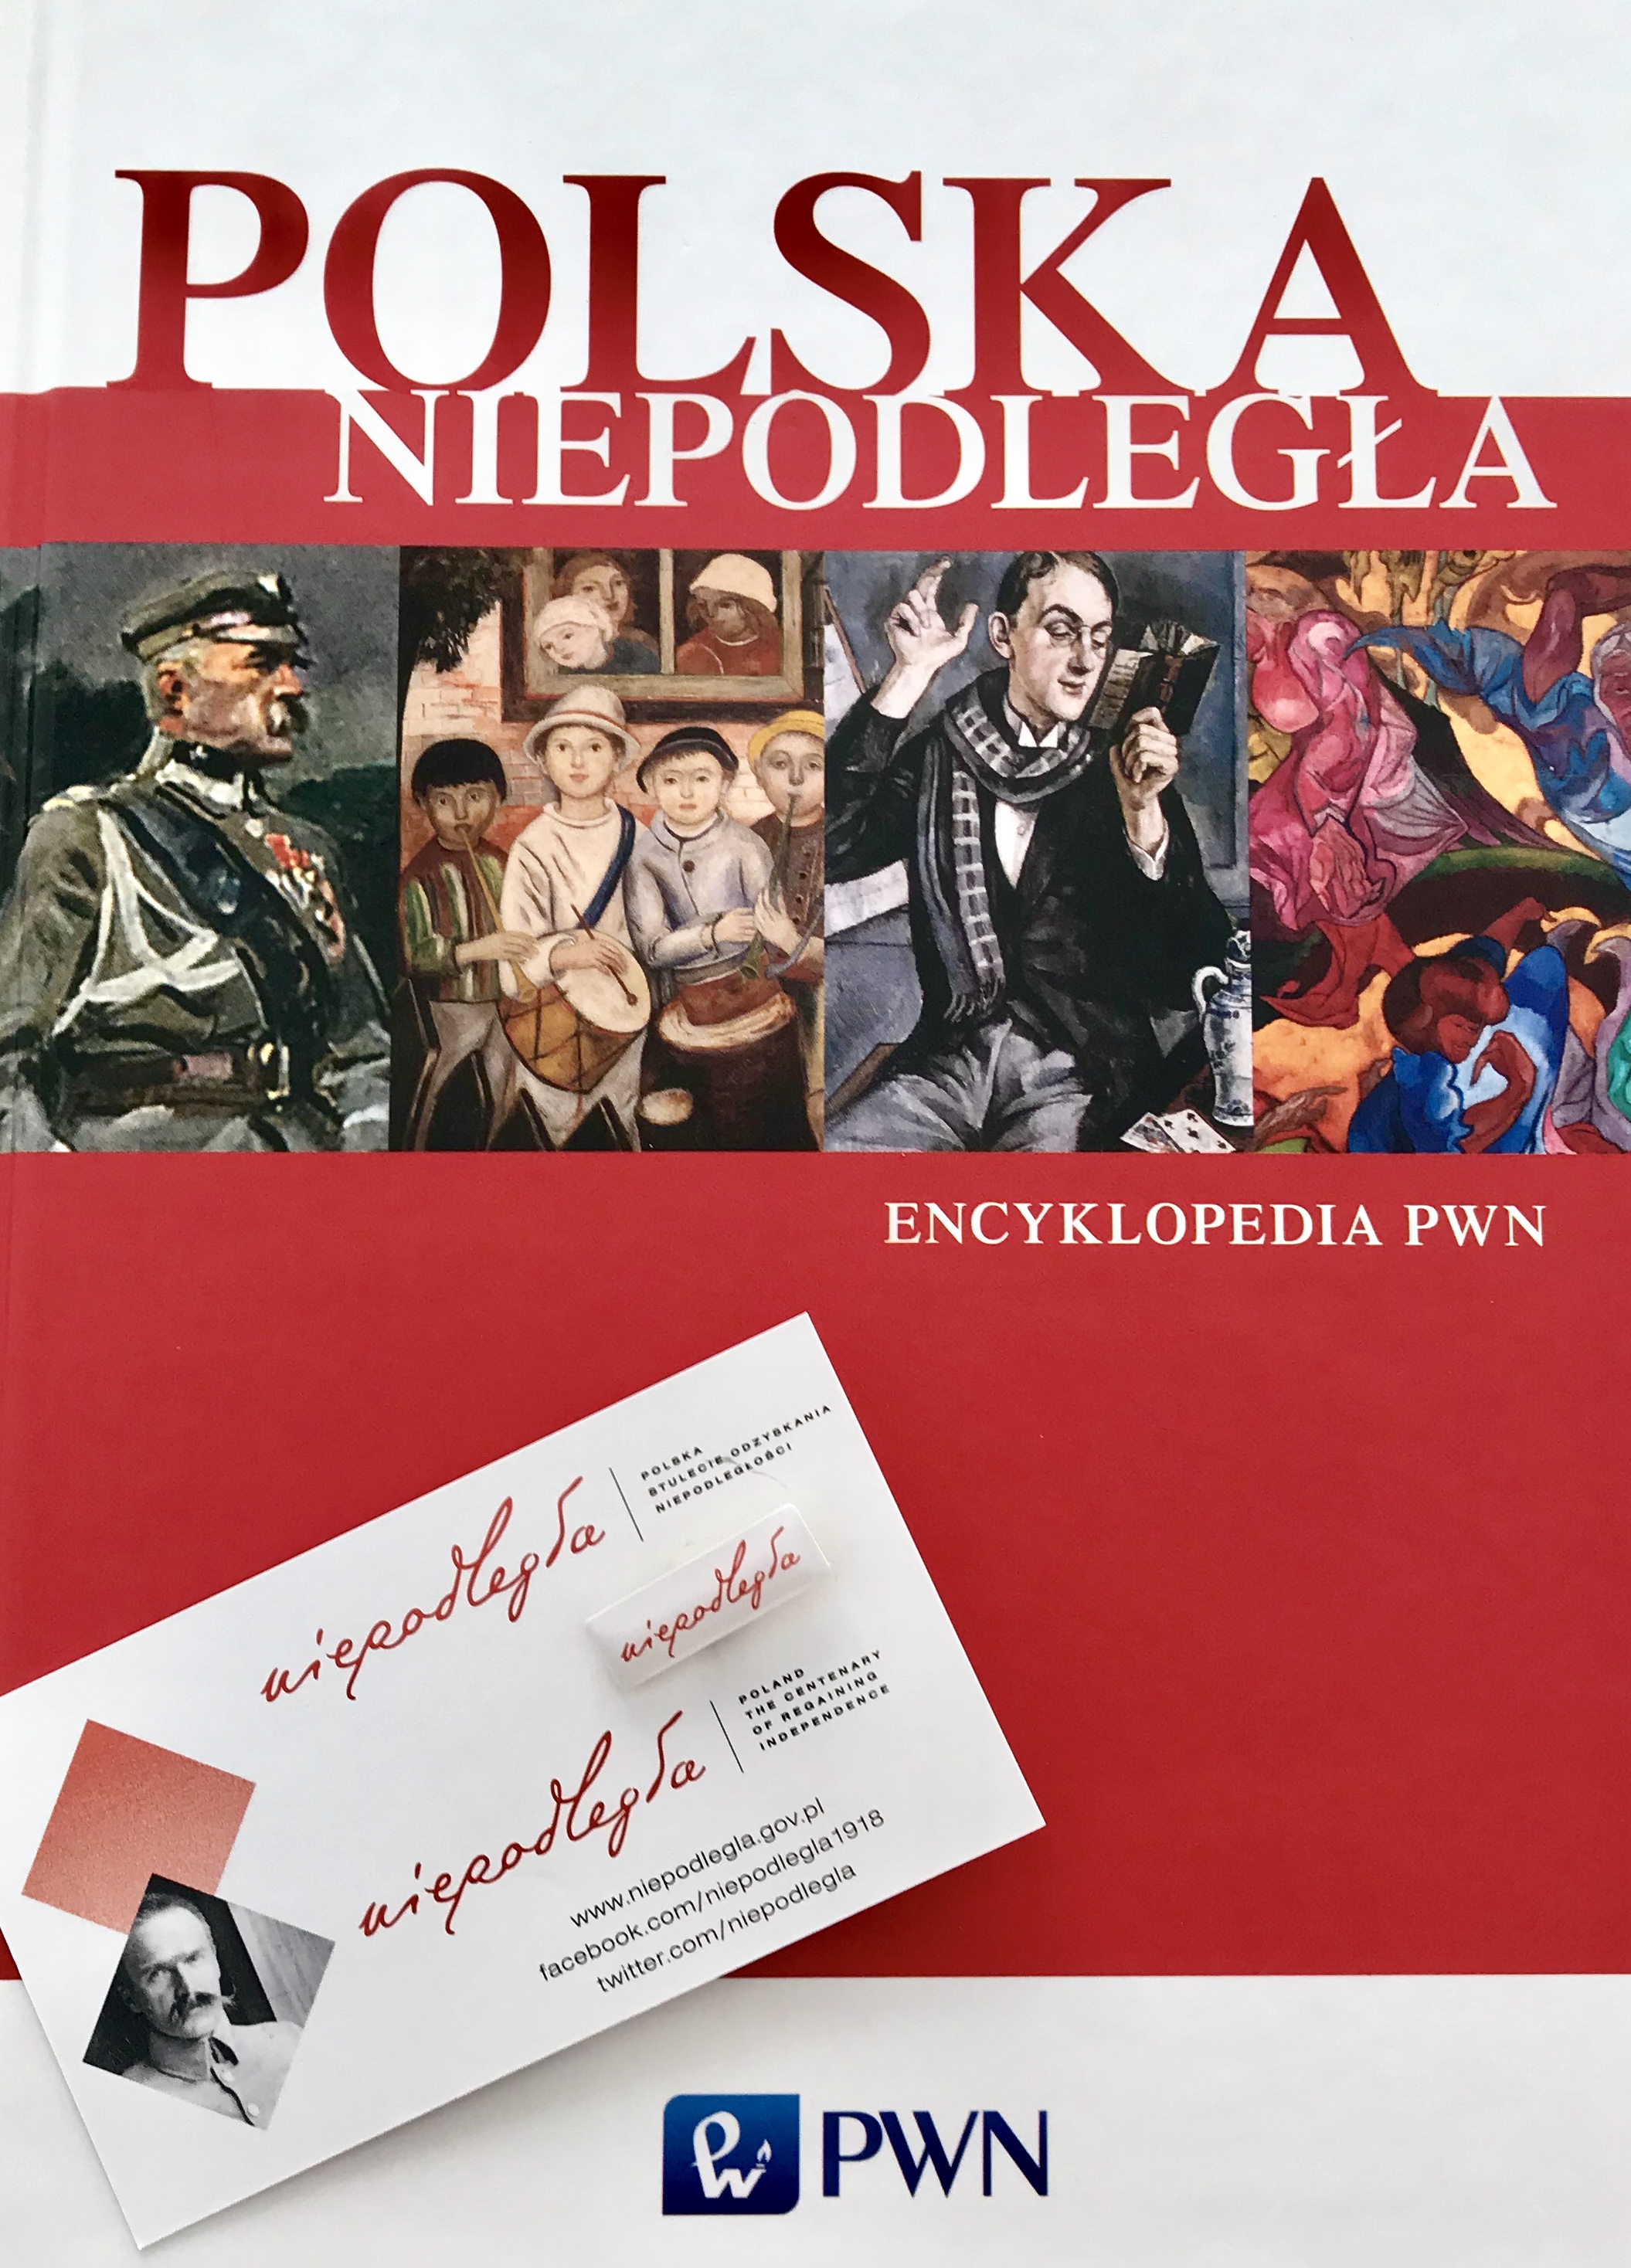 Okładka Encyklopedii PWN z okazji stulecia niepodległości